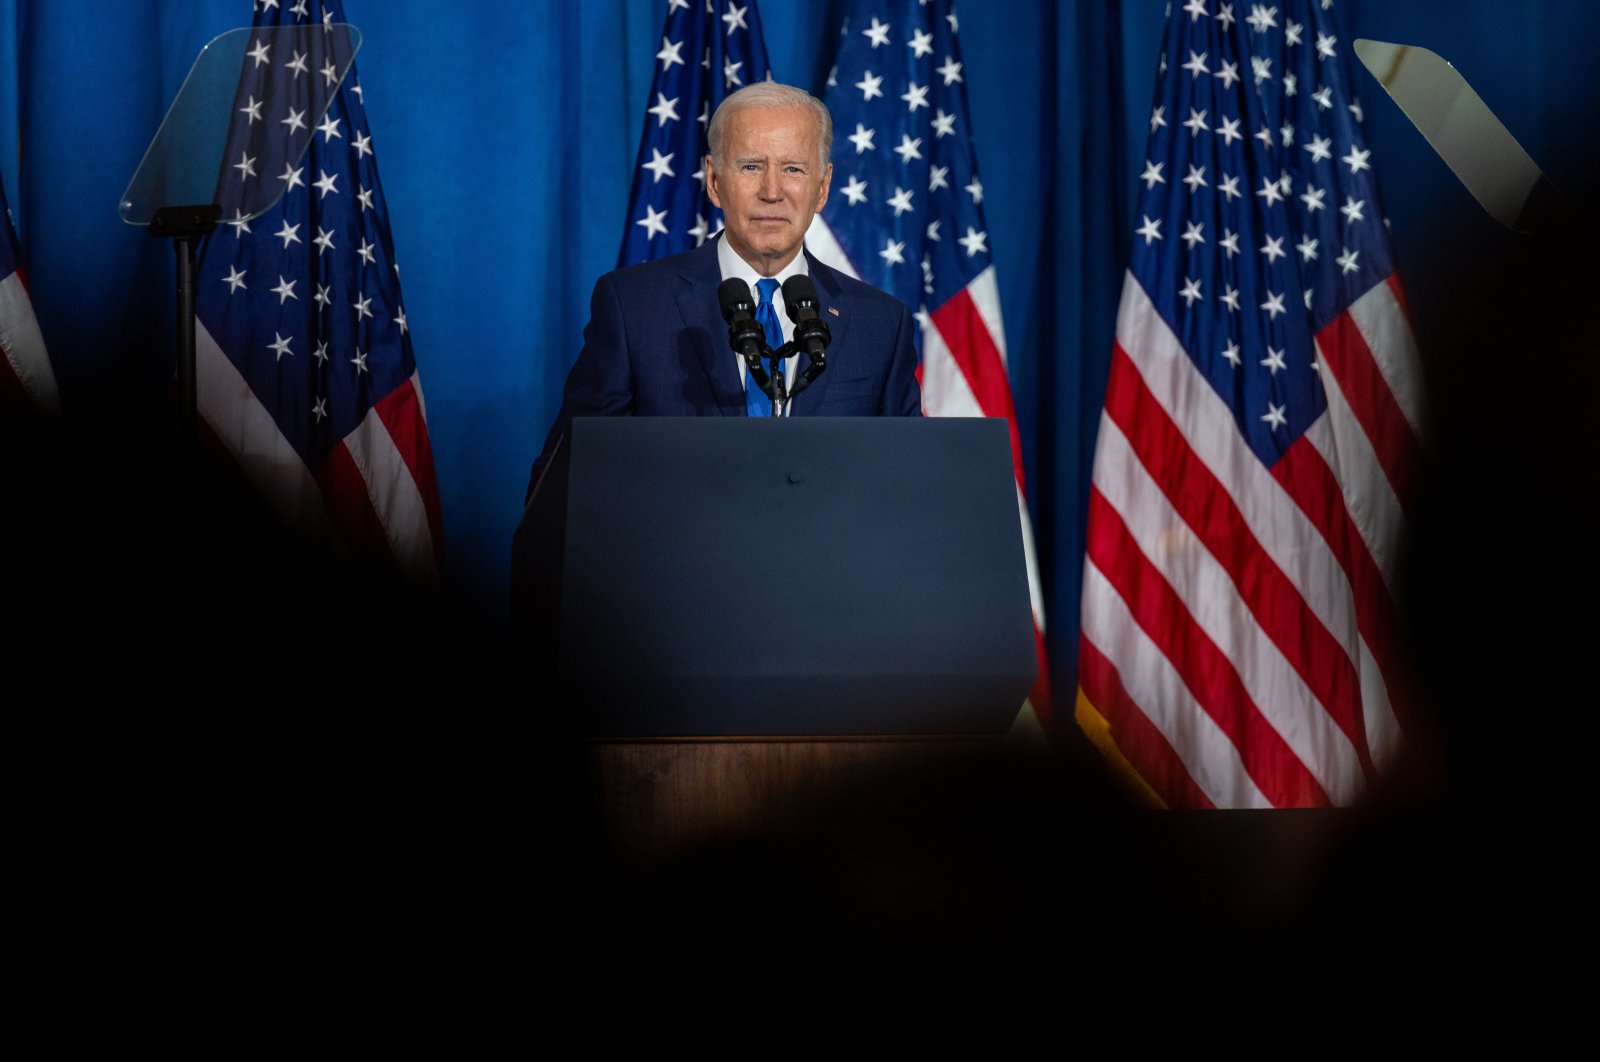 Biden mengecam penolakan Partai Republik terhadap hasil jajak pendapat sebagai ‘jalan menuju kekacauan’